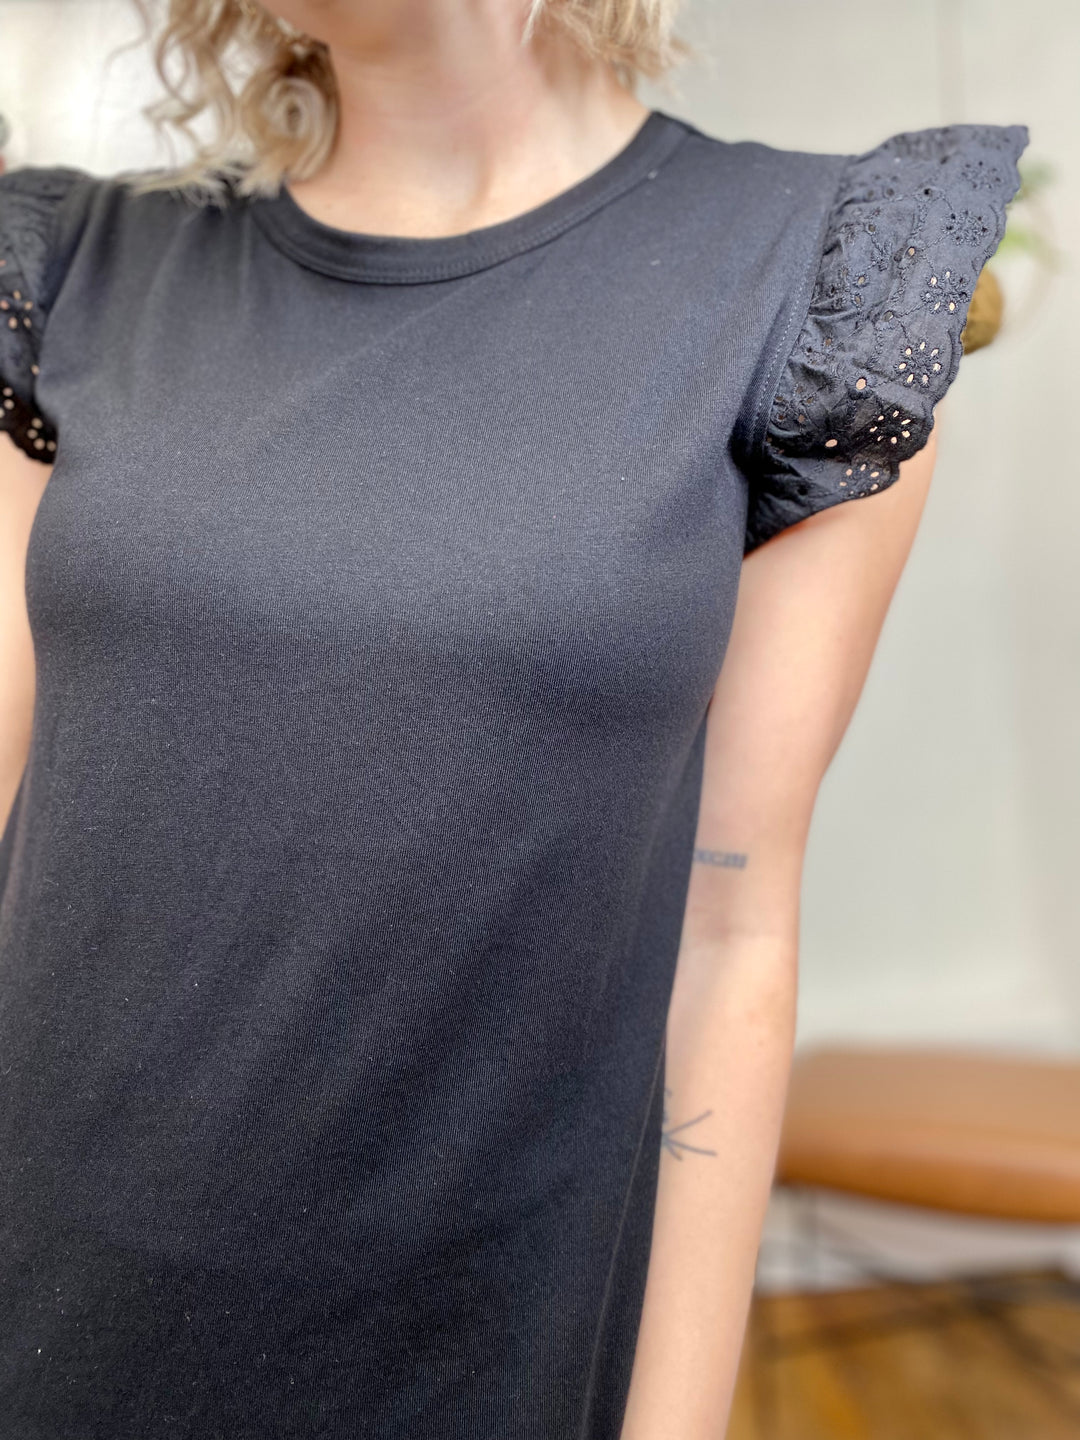 Amanda Eyelet Sleeve Blouse - Black-Tops-Anatomy Clothing Boutique in Brenham, Texas